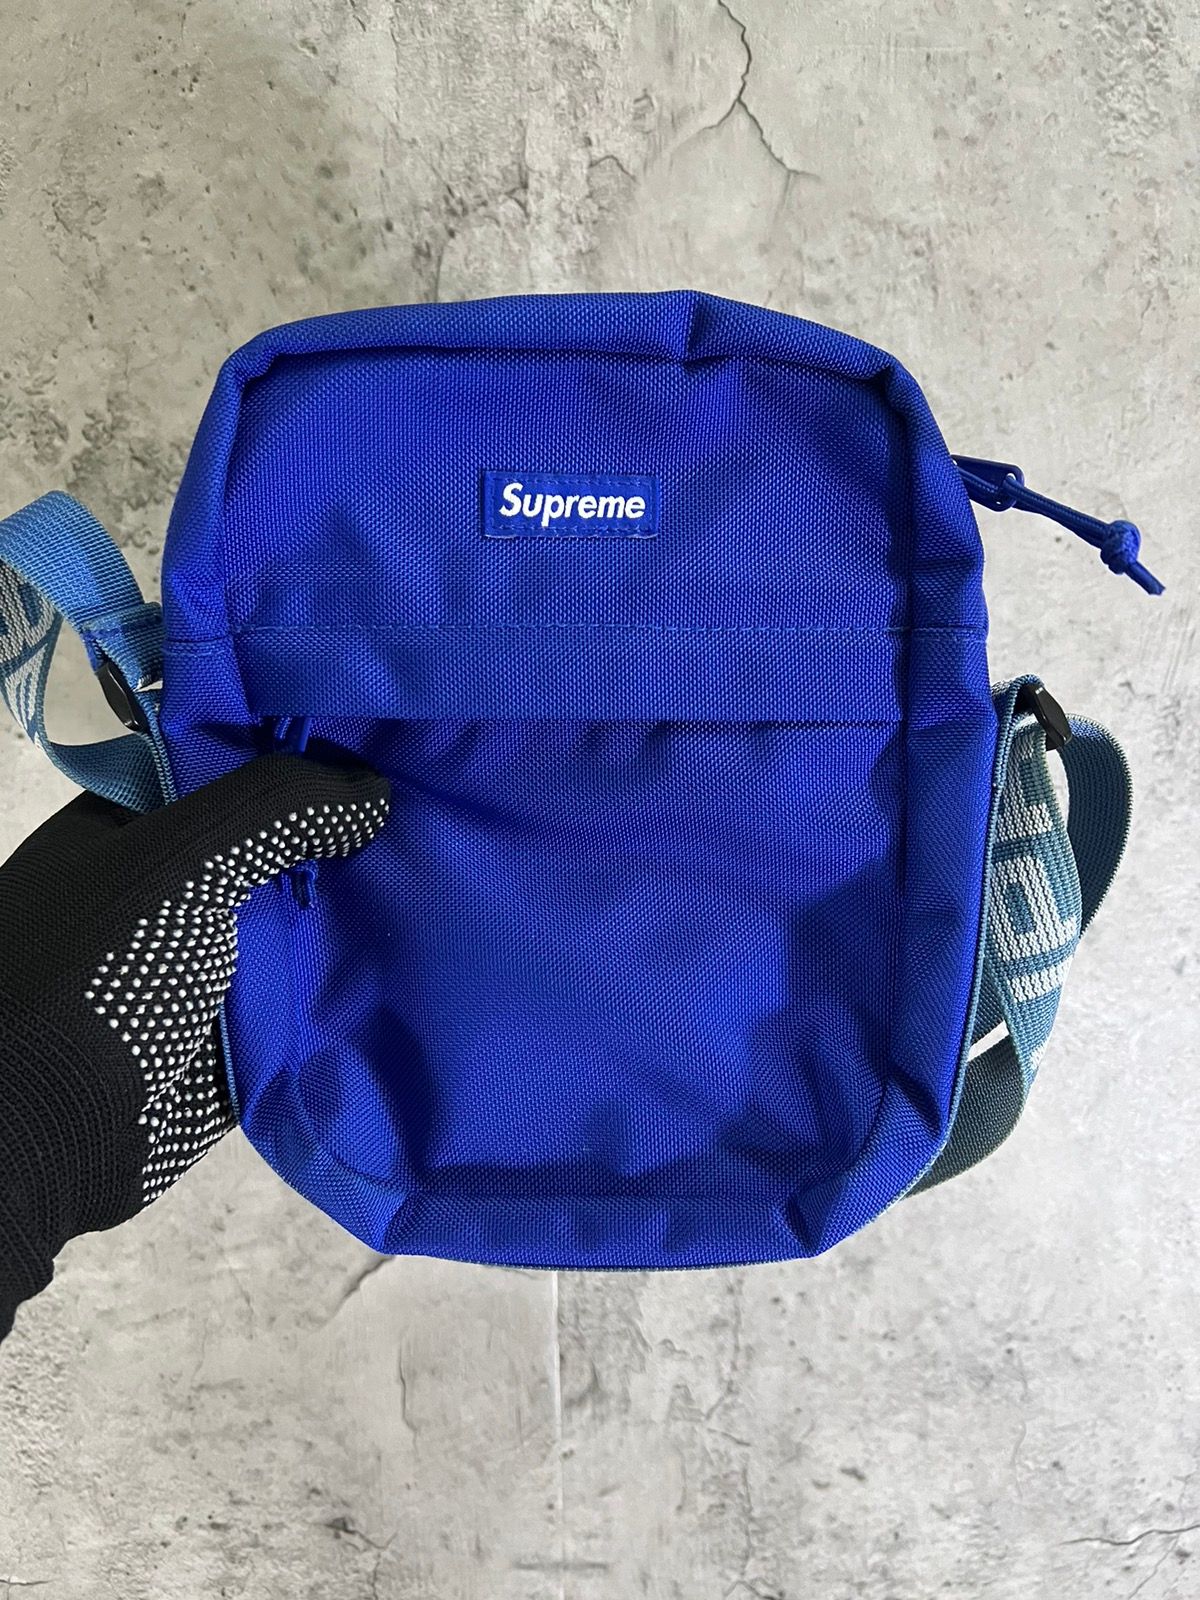 Supreme SS18 Royal Blue Shoulder Bag Cordura Authentic